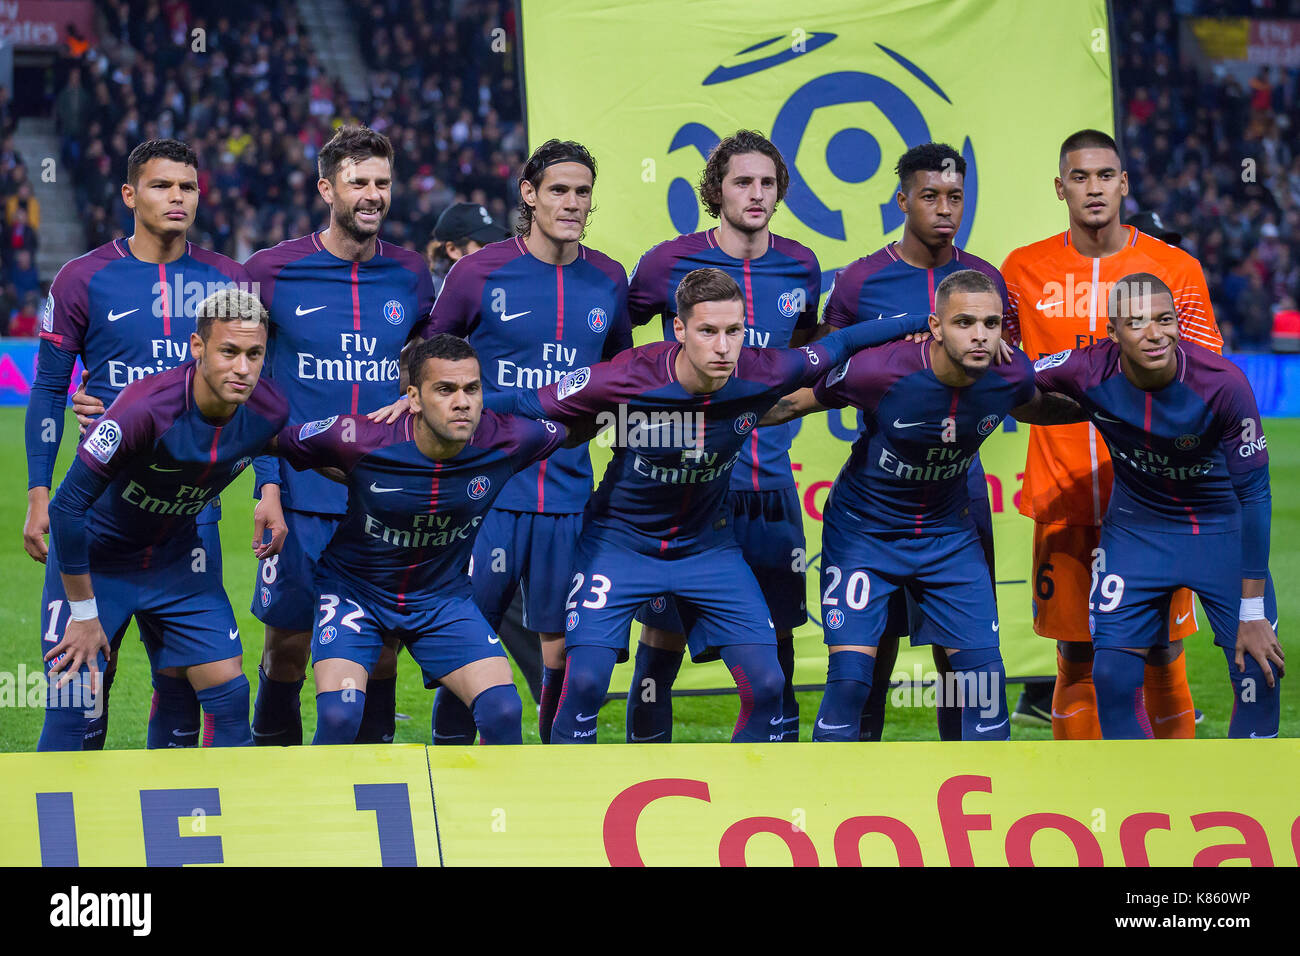 La ligne de l'équipe PSG avant la Ligue 1 match de foot entre Paris Saint  Germain (PSG) et l'Olympique Lyonnais (OL) au Parc des Princes. Le 17  septembre 2017 à Paris, France